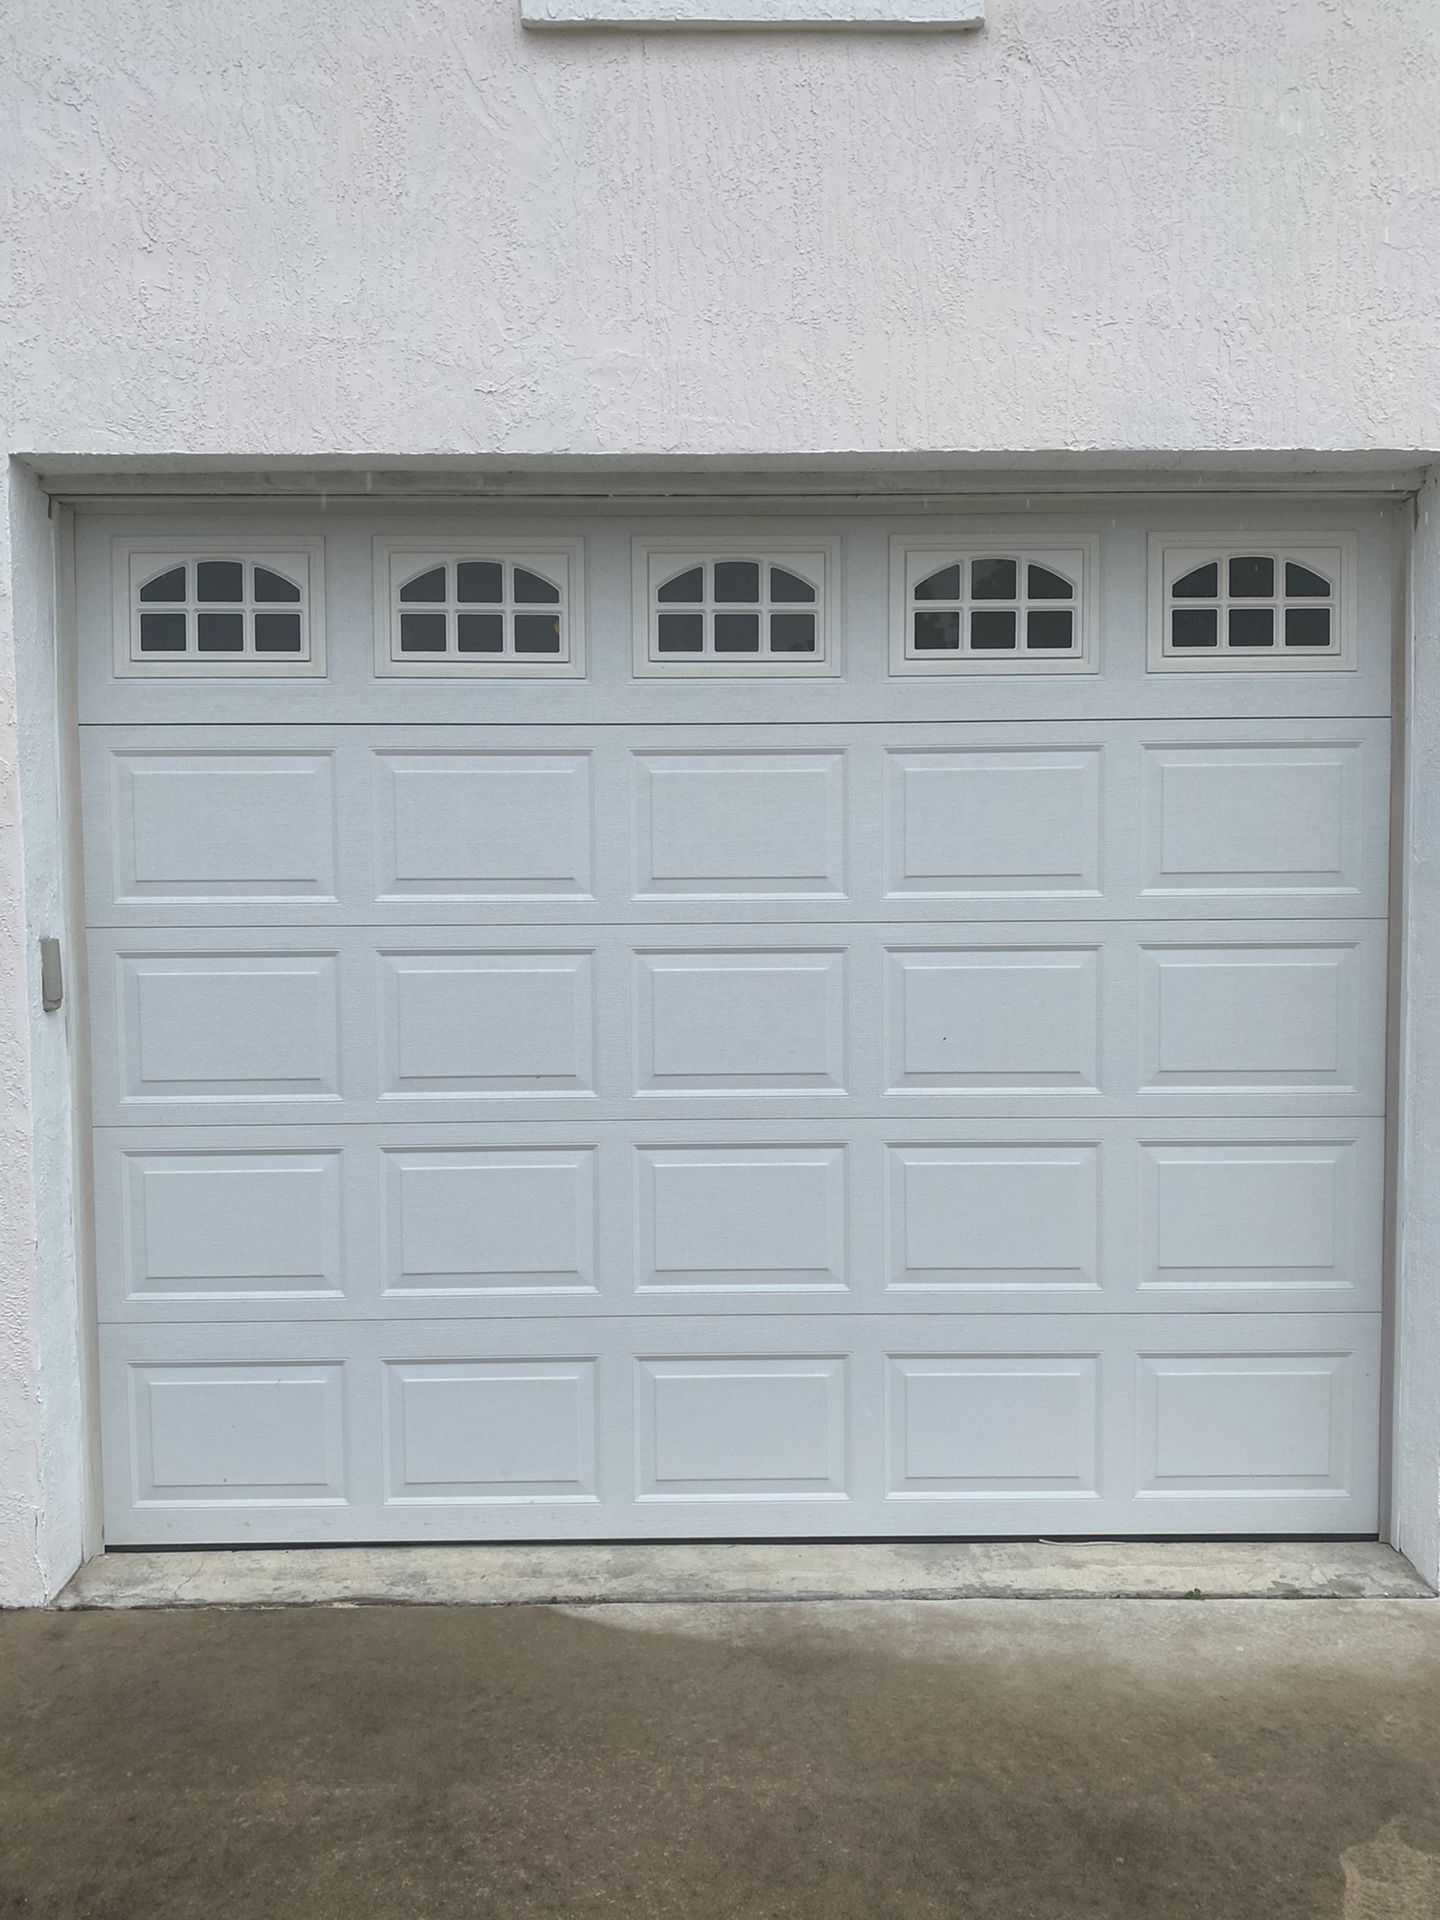 Garage Door Insulated 